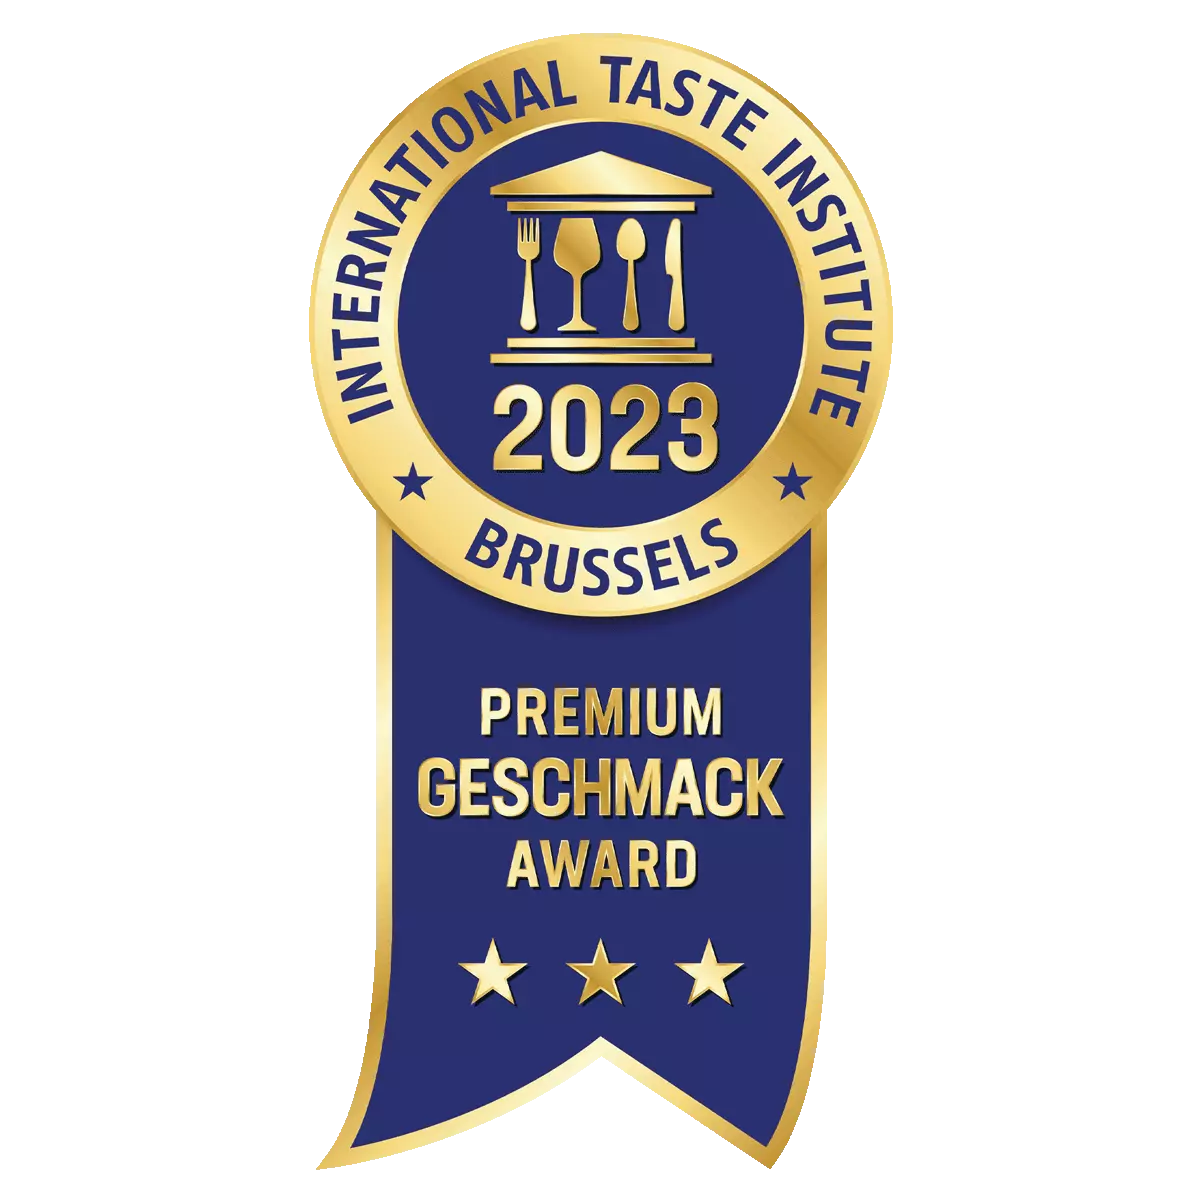 Premium Geschmack Award 2023